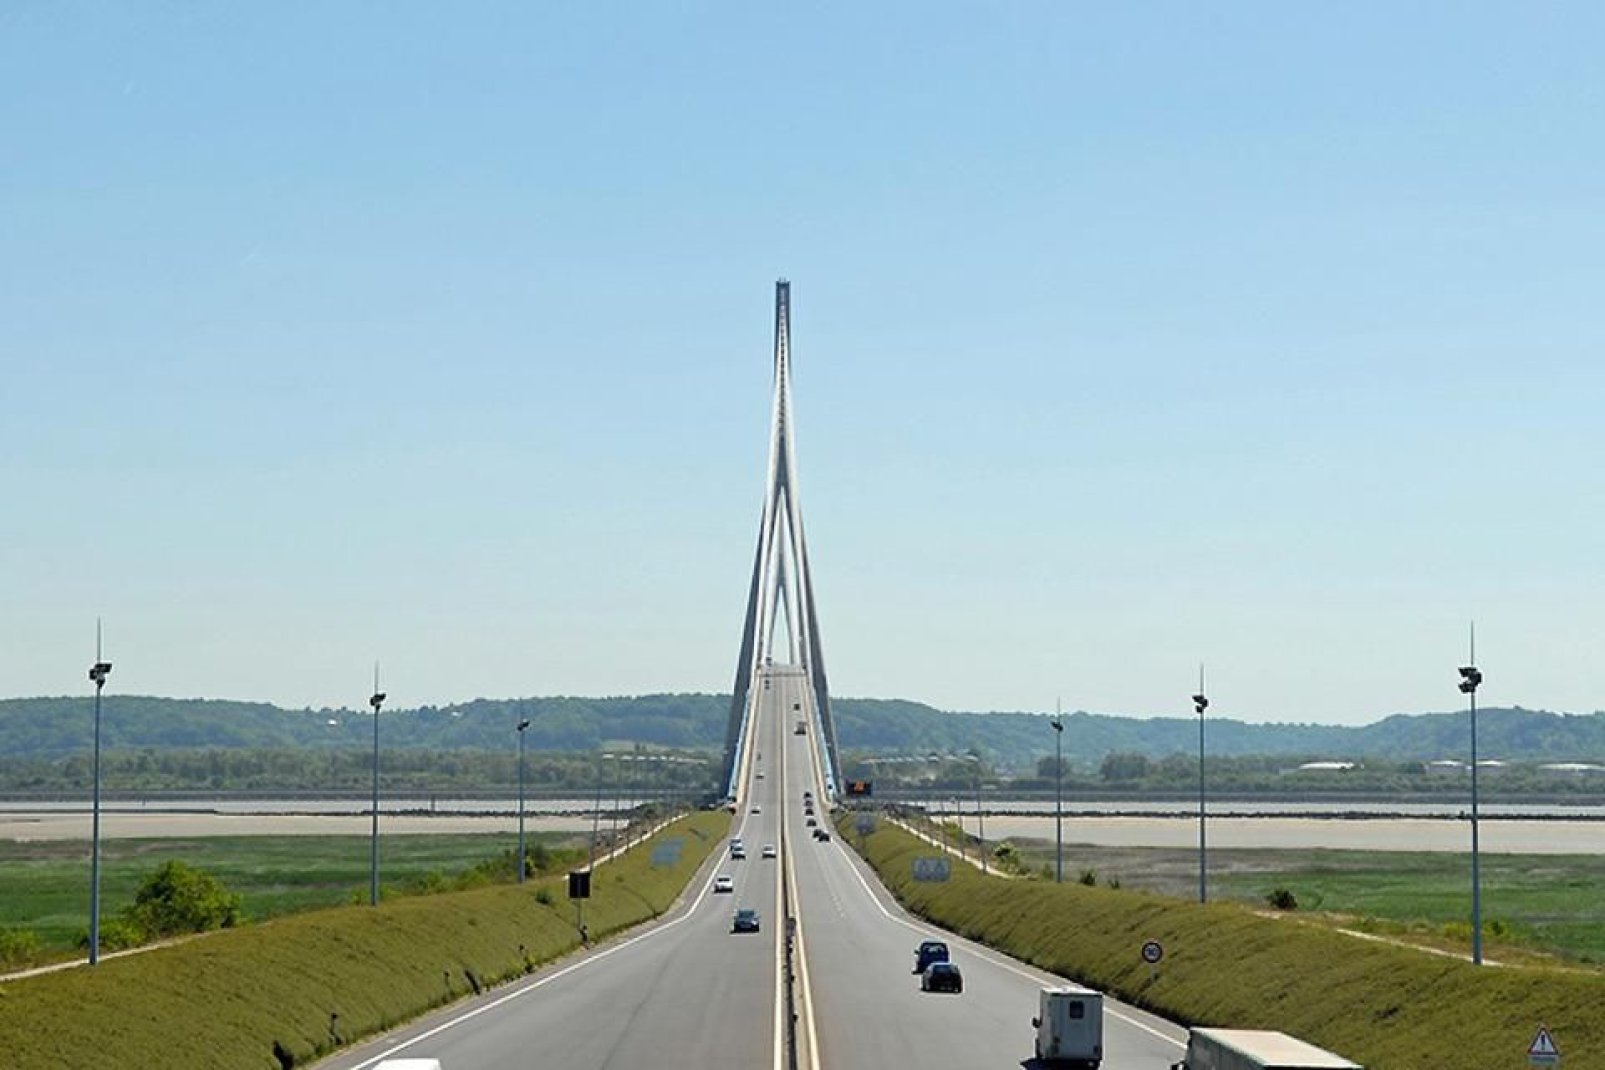 Sie ist 2,141 km lang und verbindet die Städte Le Havre und Honfleur im Departement Calvados. Tagtäglich überqueren mehr als 30.000 Fahrzeuge diese Brücke.